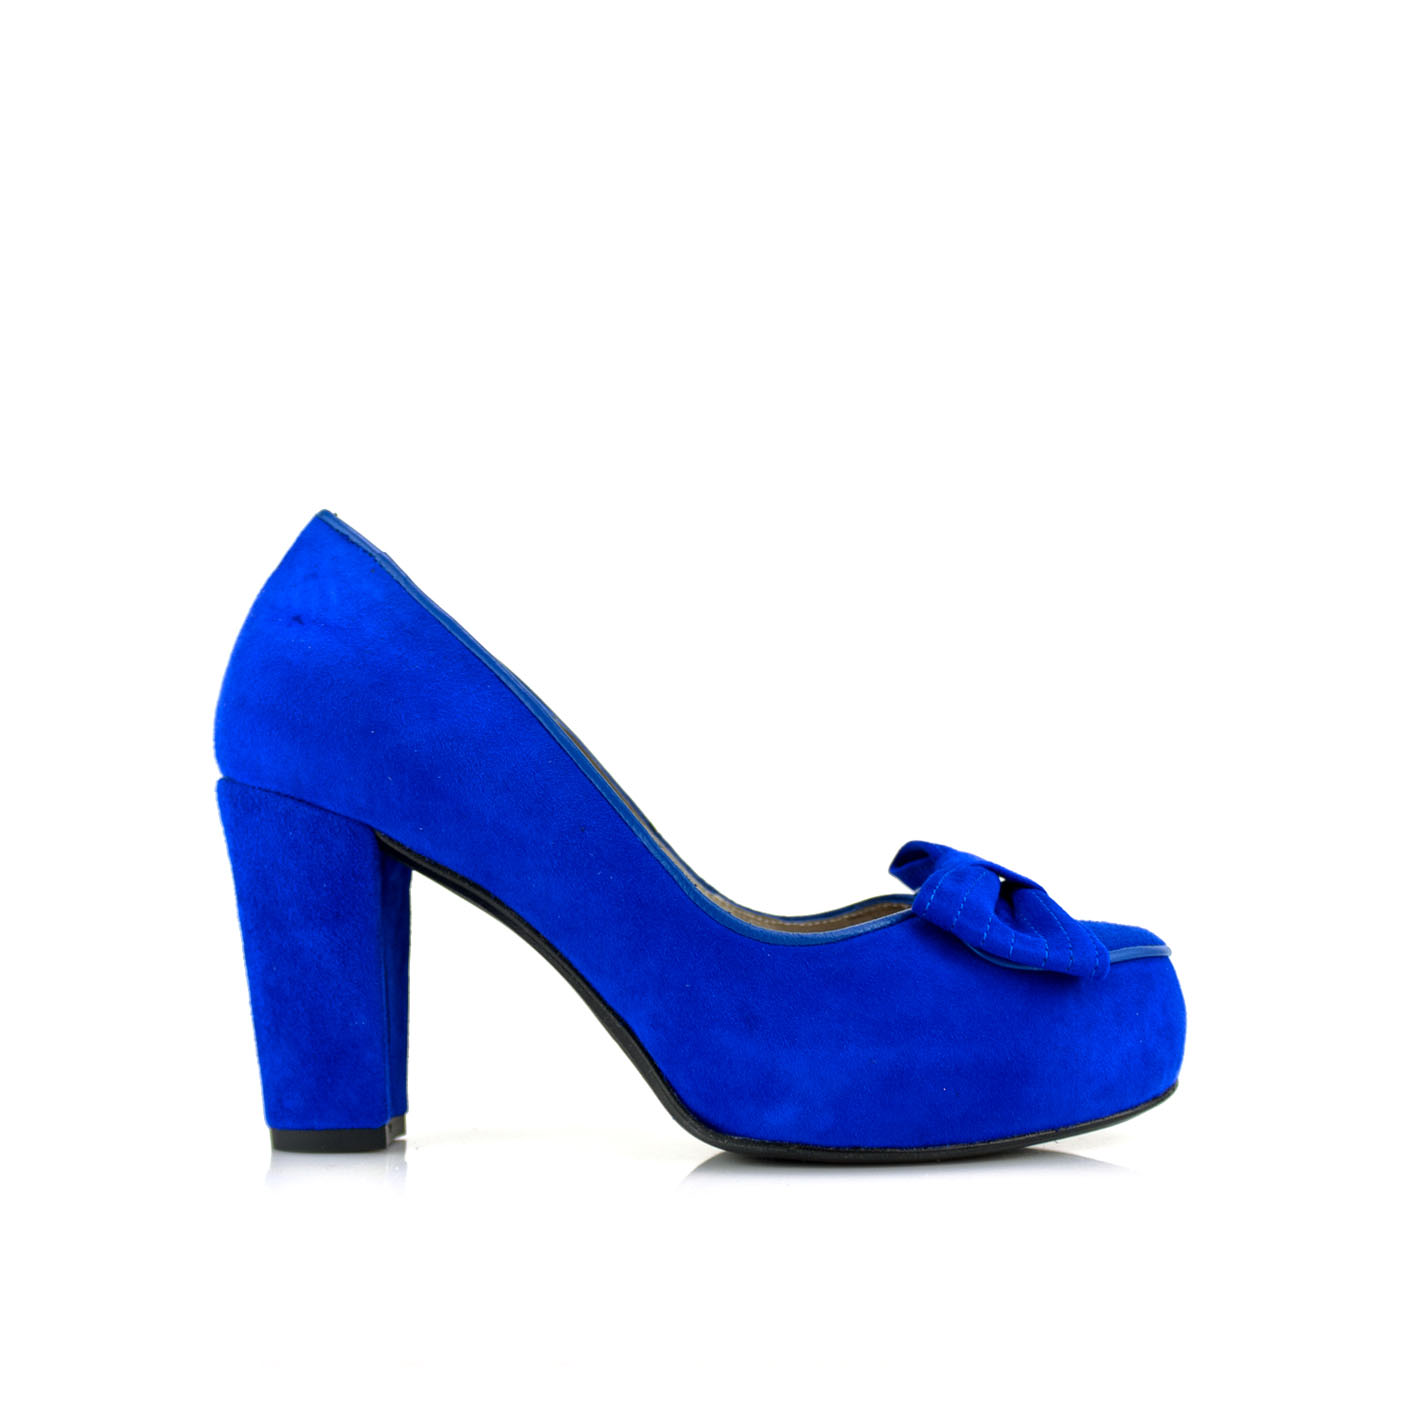 Zapatos salon de mujer en ante azul y tacon de 8 cm